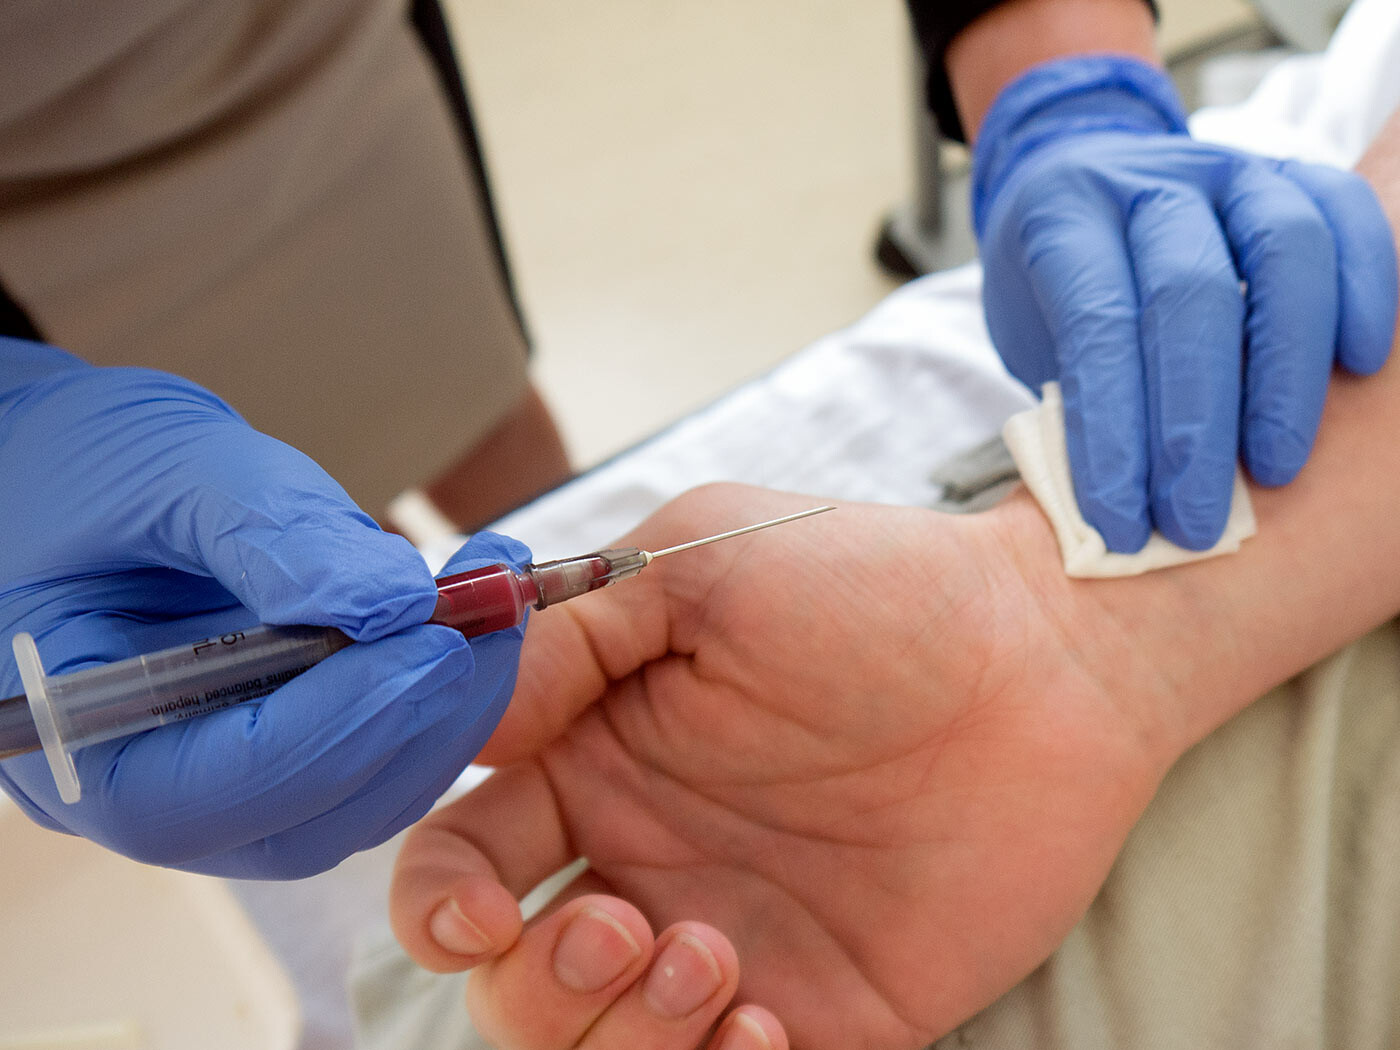 Sau khi lấy máu điều dưỡng sẽ đặt 1 miếng bông lên vị trí lấy máu. Nguồn ảnh: medistudents.